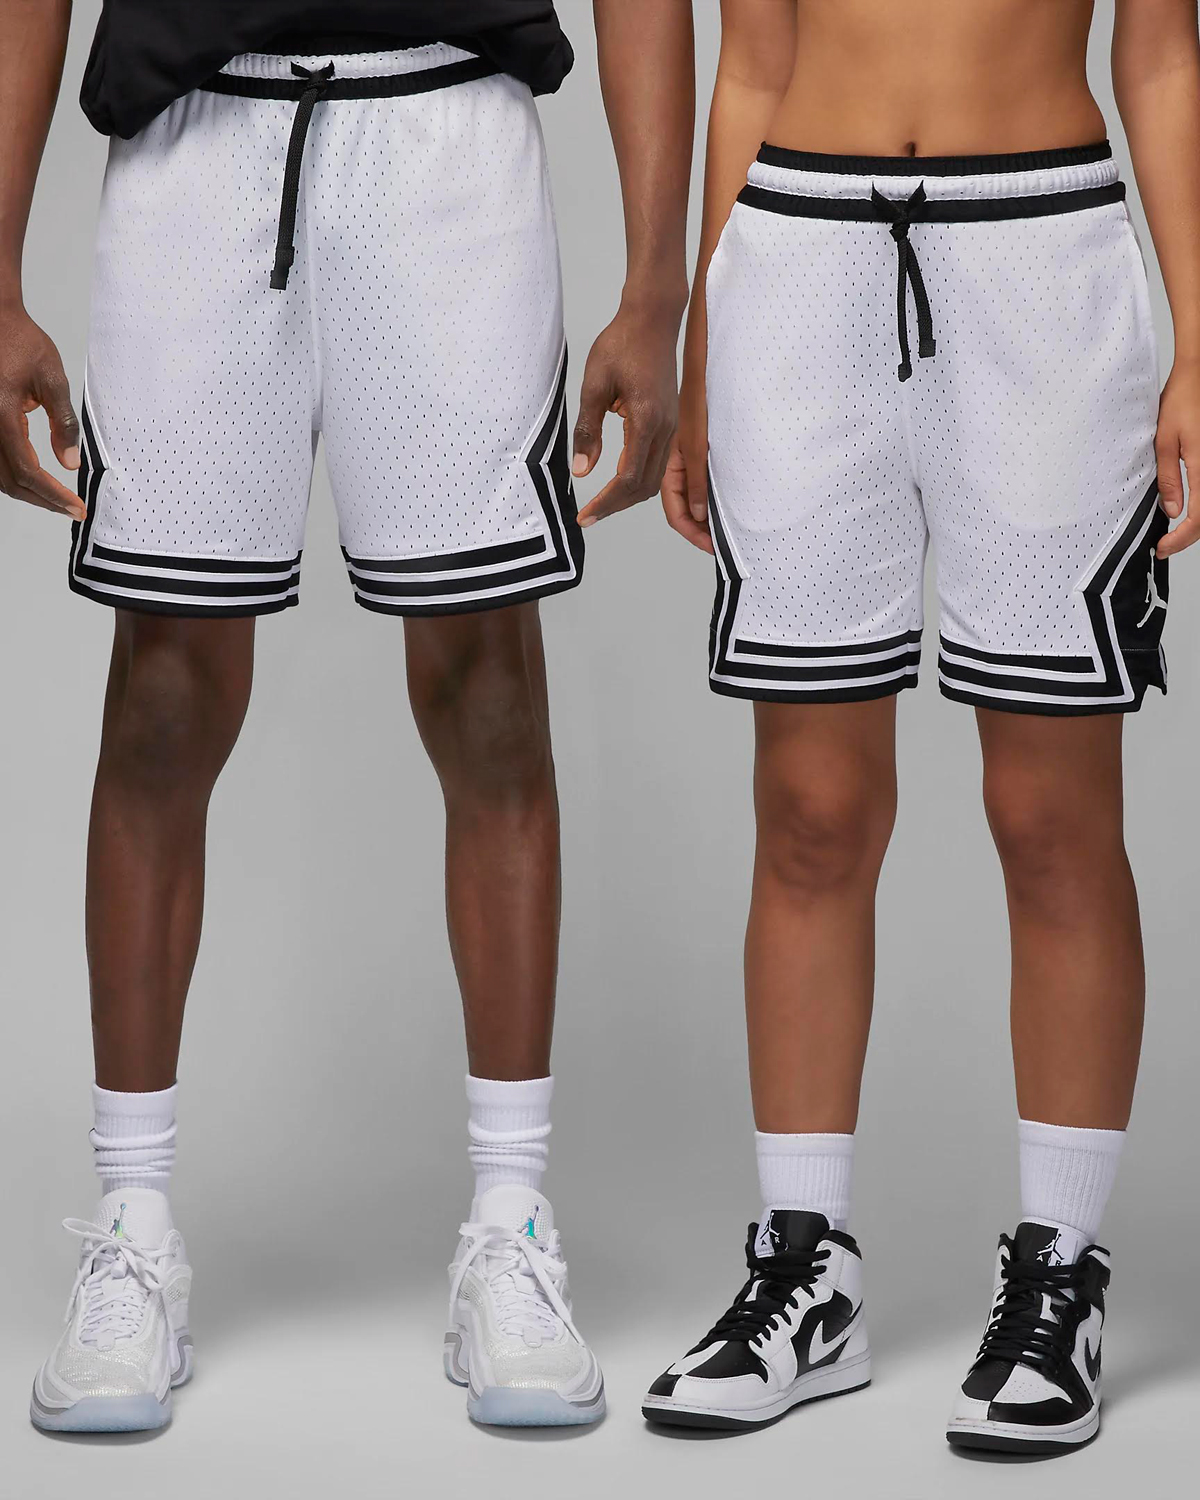 Jordan-Mesh-Diamond-Shorts-White-Black-1